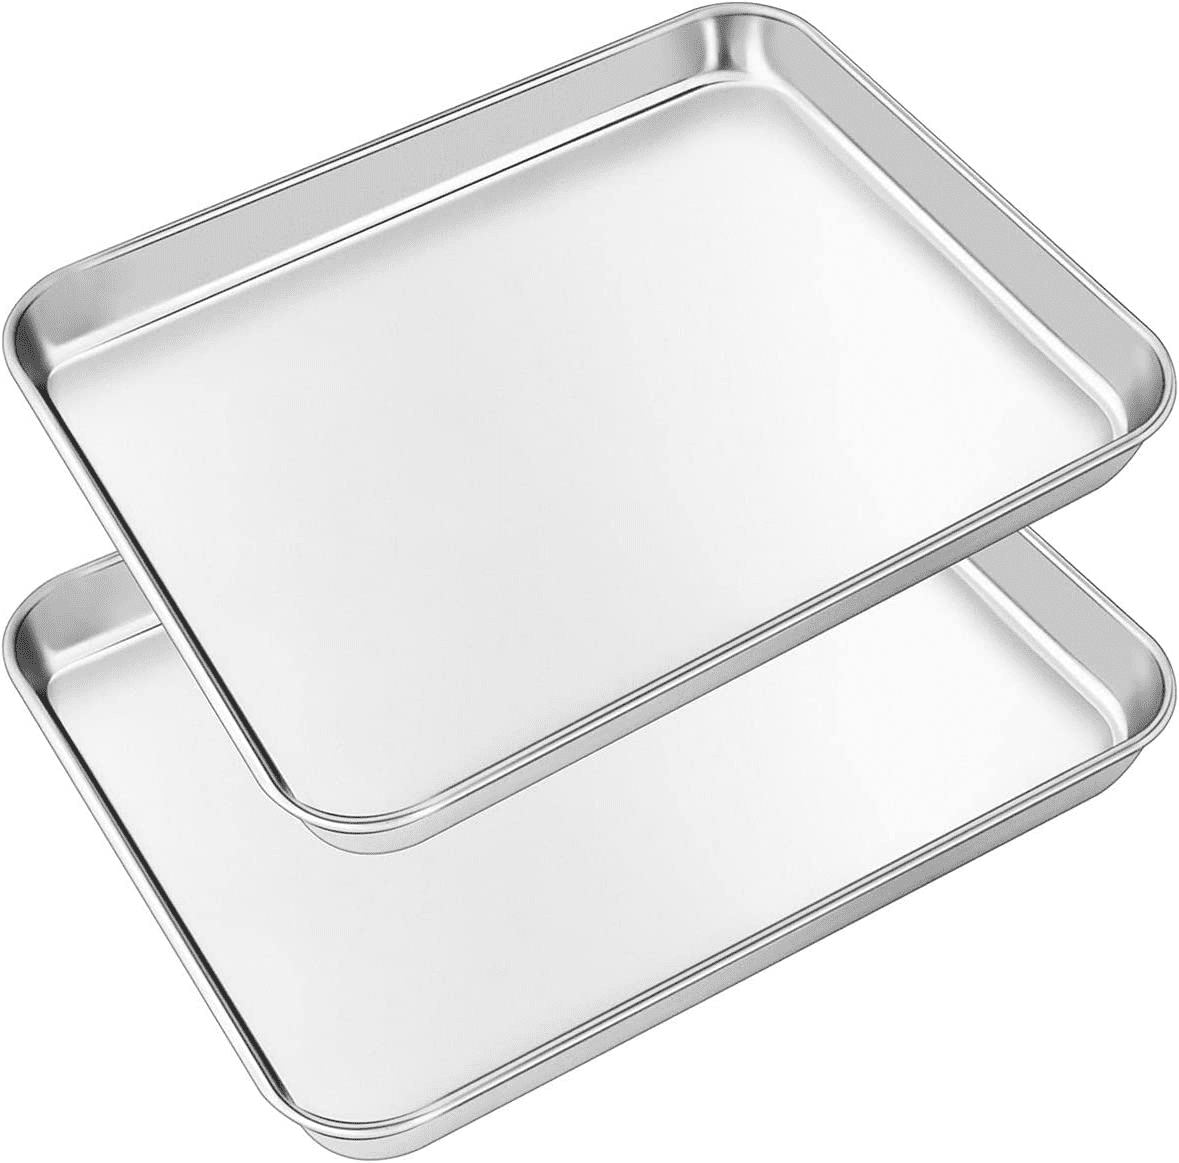 2PCS Baking Trays, Healthy 304 Stainless Steel Cake Tray, Rectangular Oven  Tray, Dishwasher Safe Baking Sheet, 14.2×10.6×0.8 Rustproof Cookie Pan